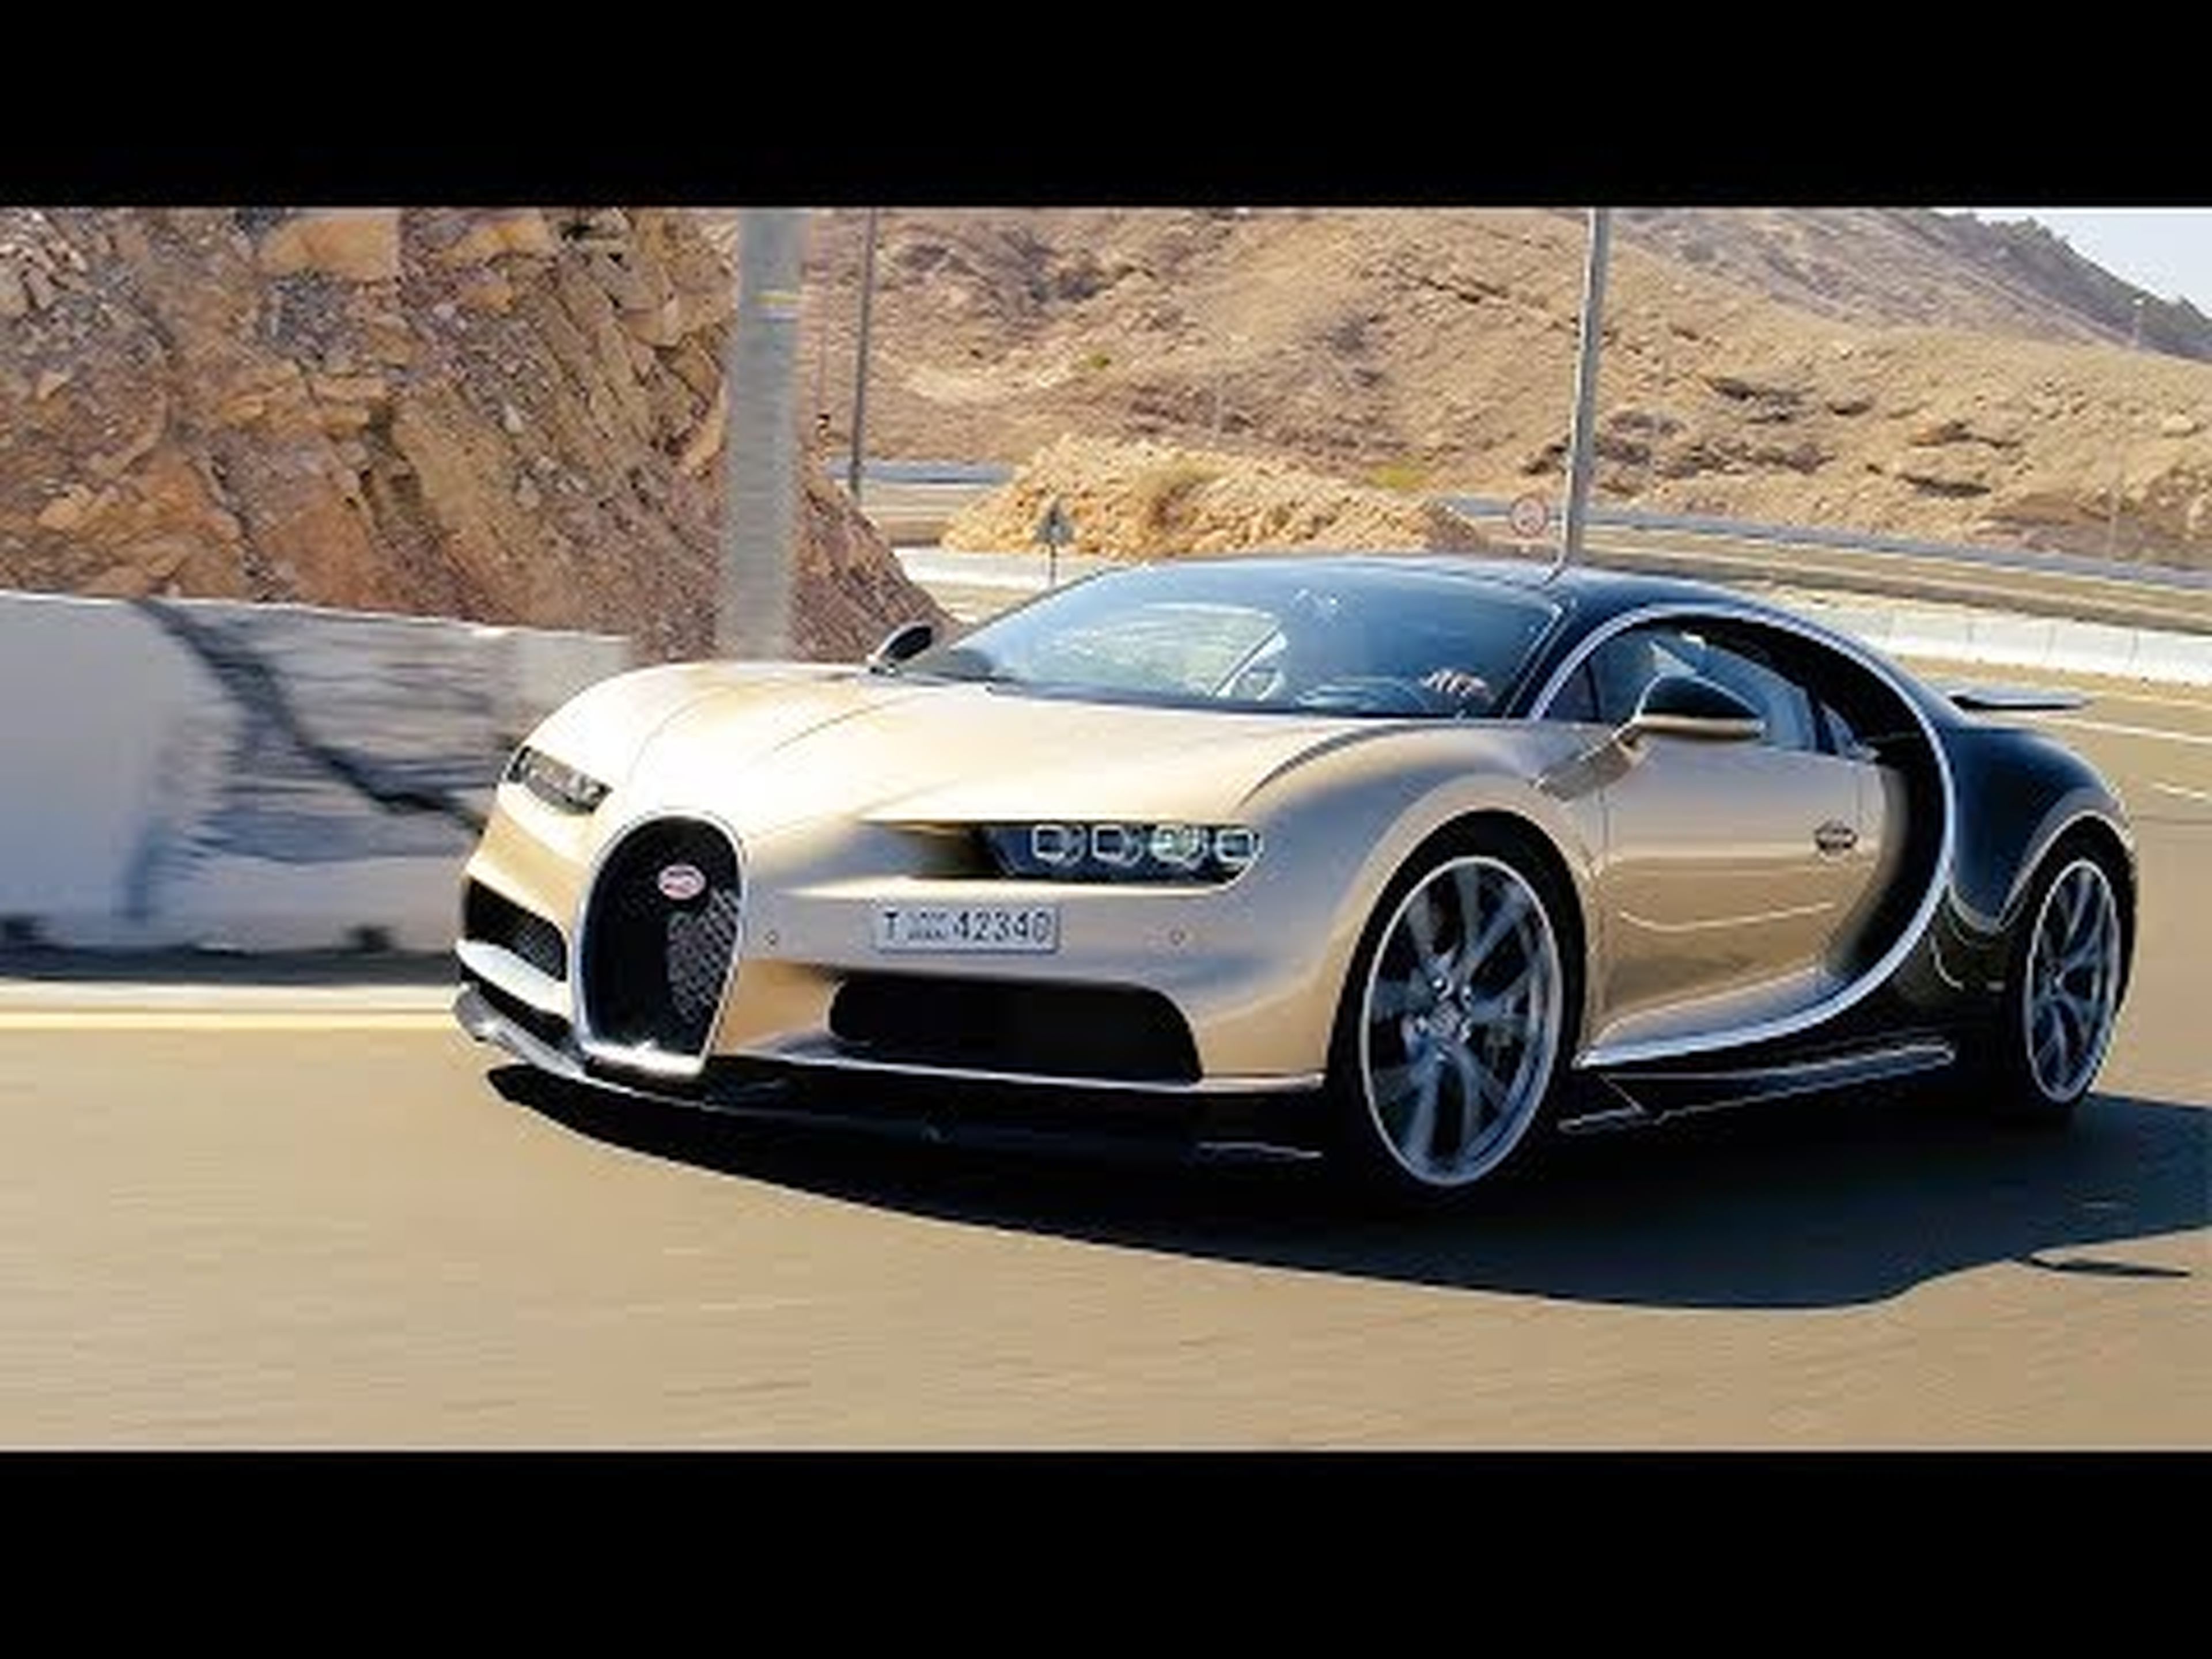 The 261mph Bugatti Chiron - Chris Harris Drives - Top Gear